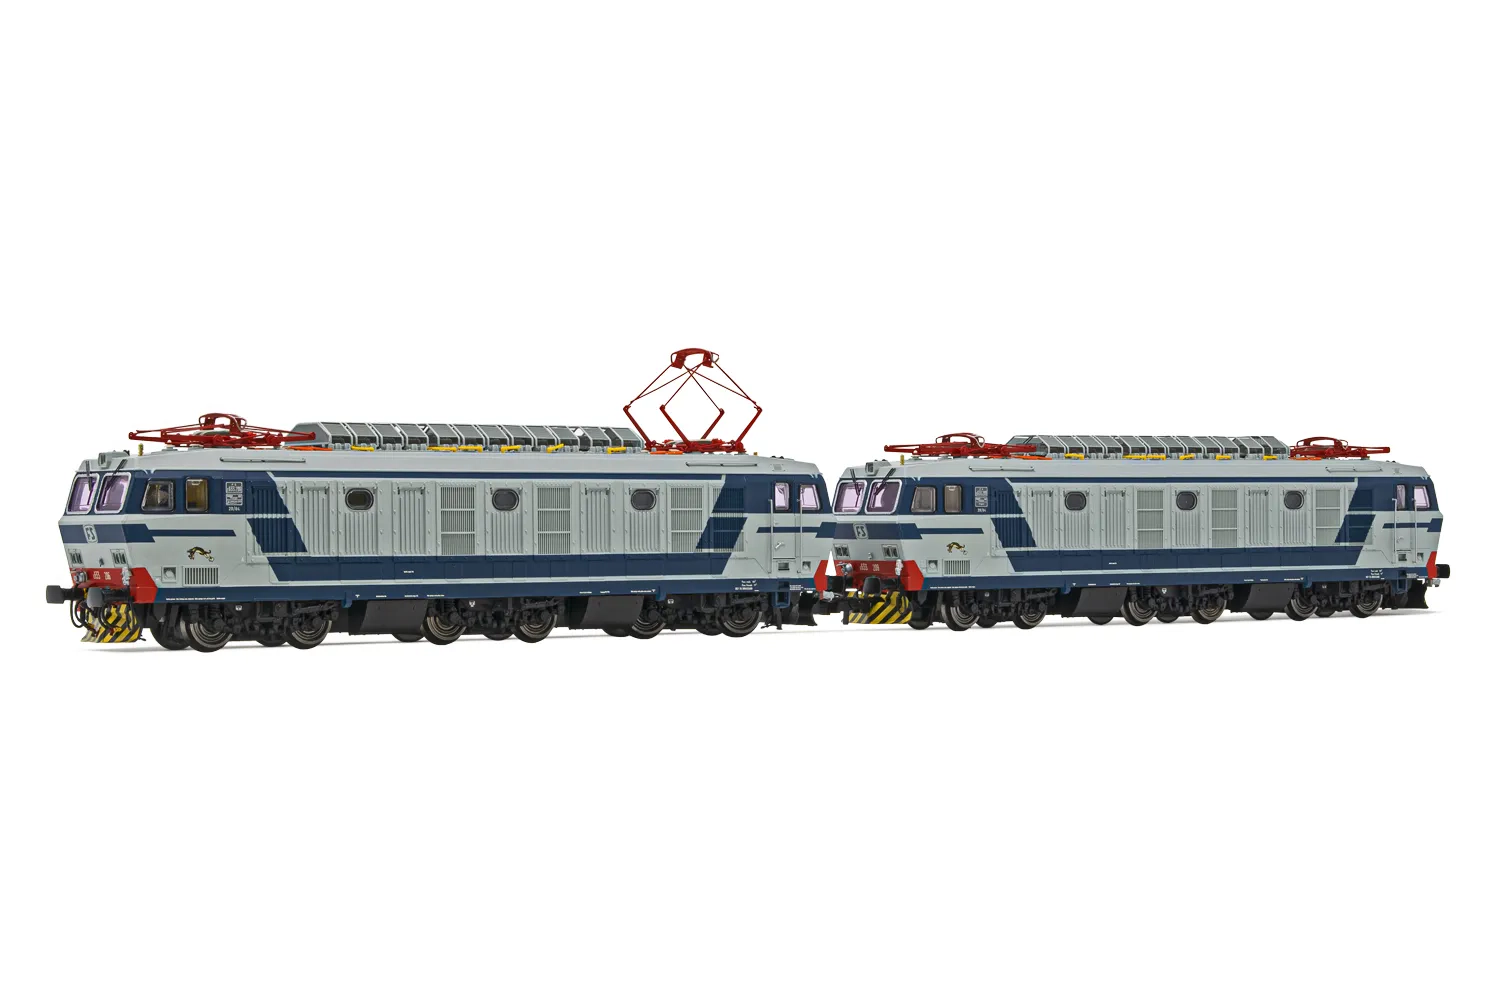 FS, set di 2 locomotive elettriche E.633 serie 200, livrea blu/grigia, entrambe motorizzate, ep. IV-V, con DCC Sound decoder